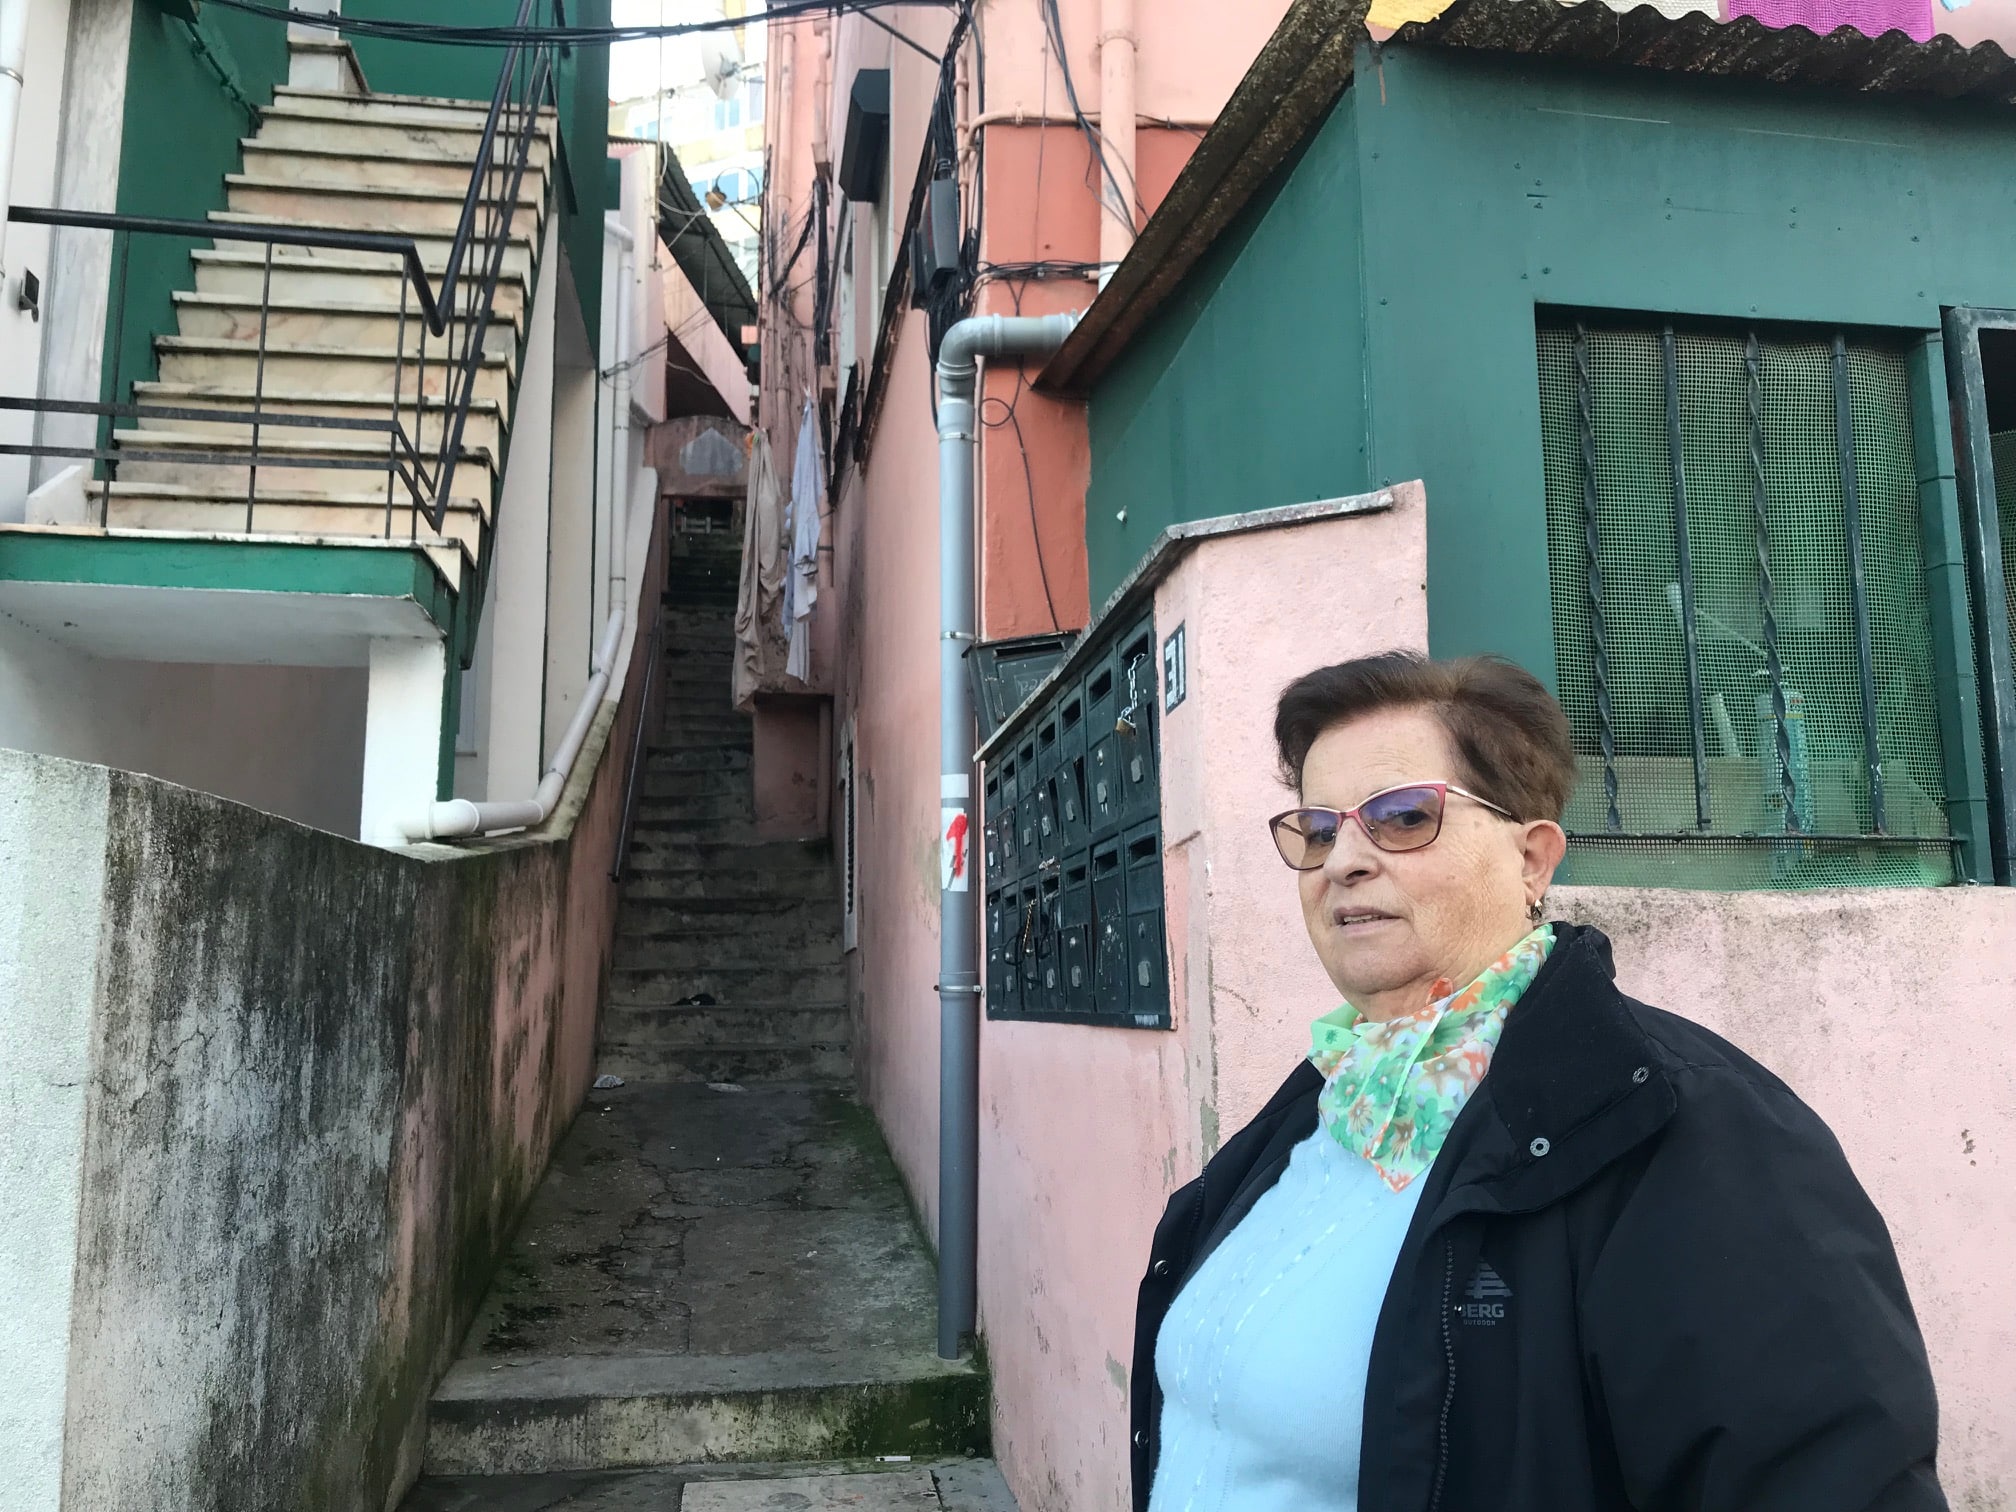 Rosa luta pela dignificação de um bairro degradado junto à Graça